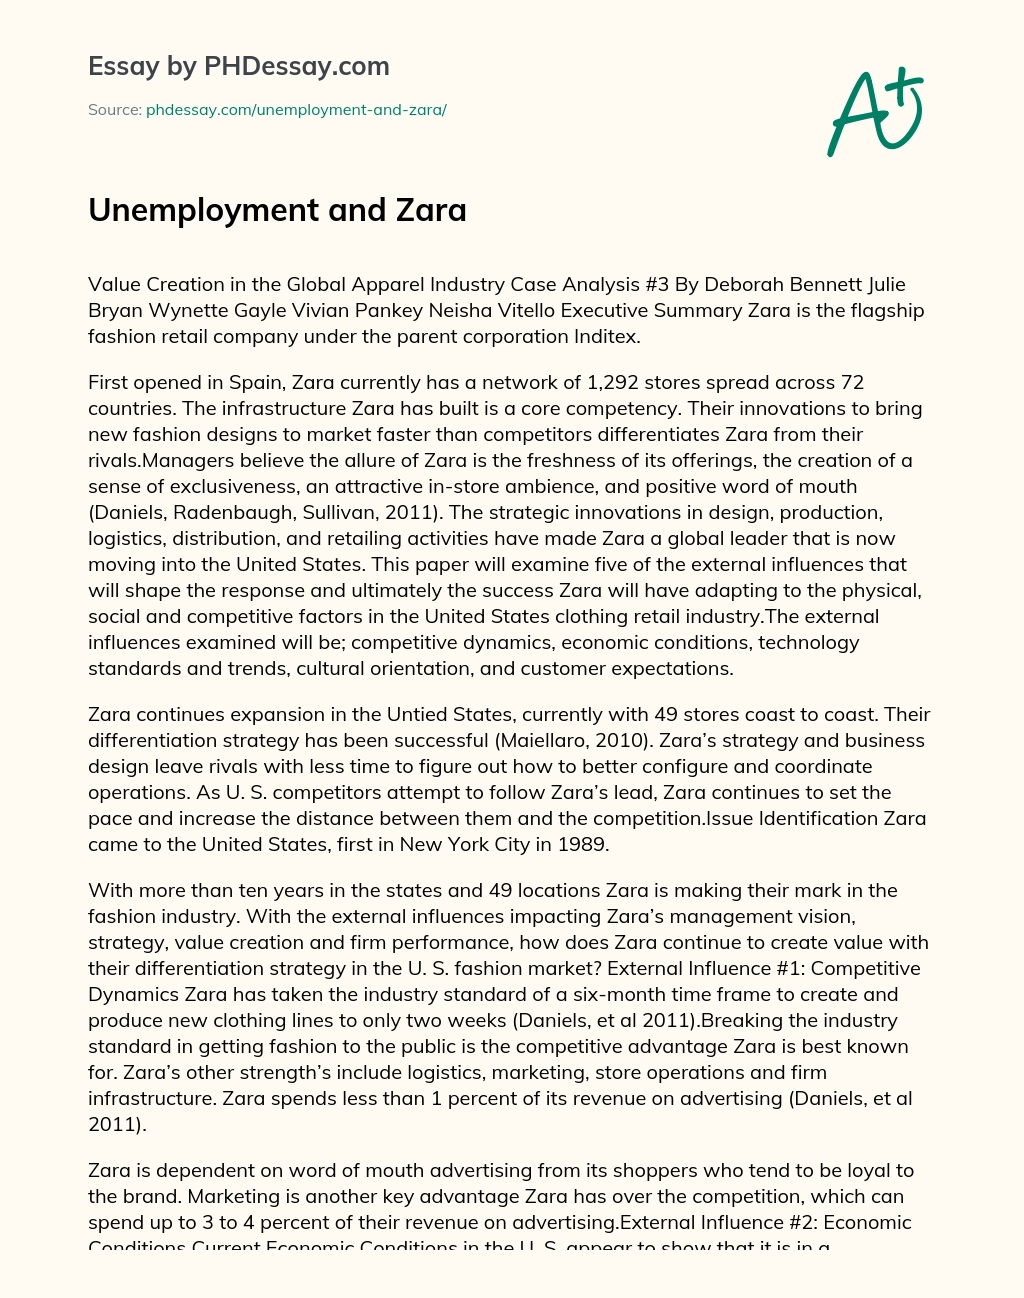 Unemployment and Zara essay